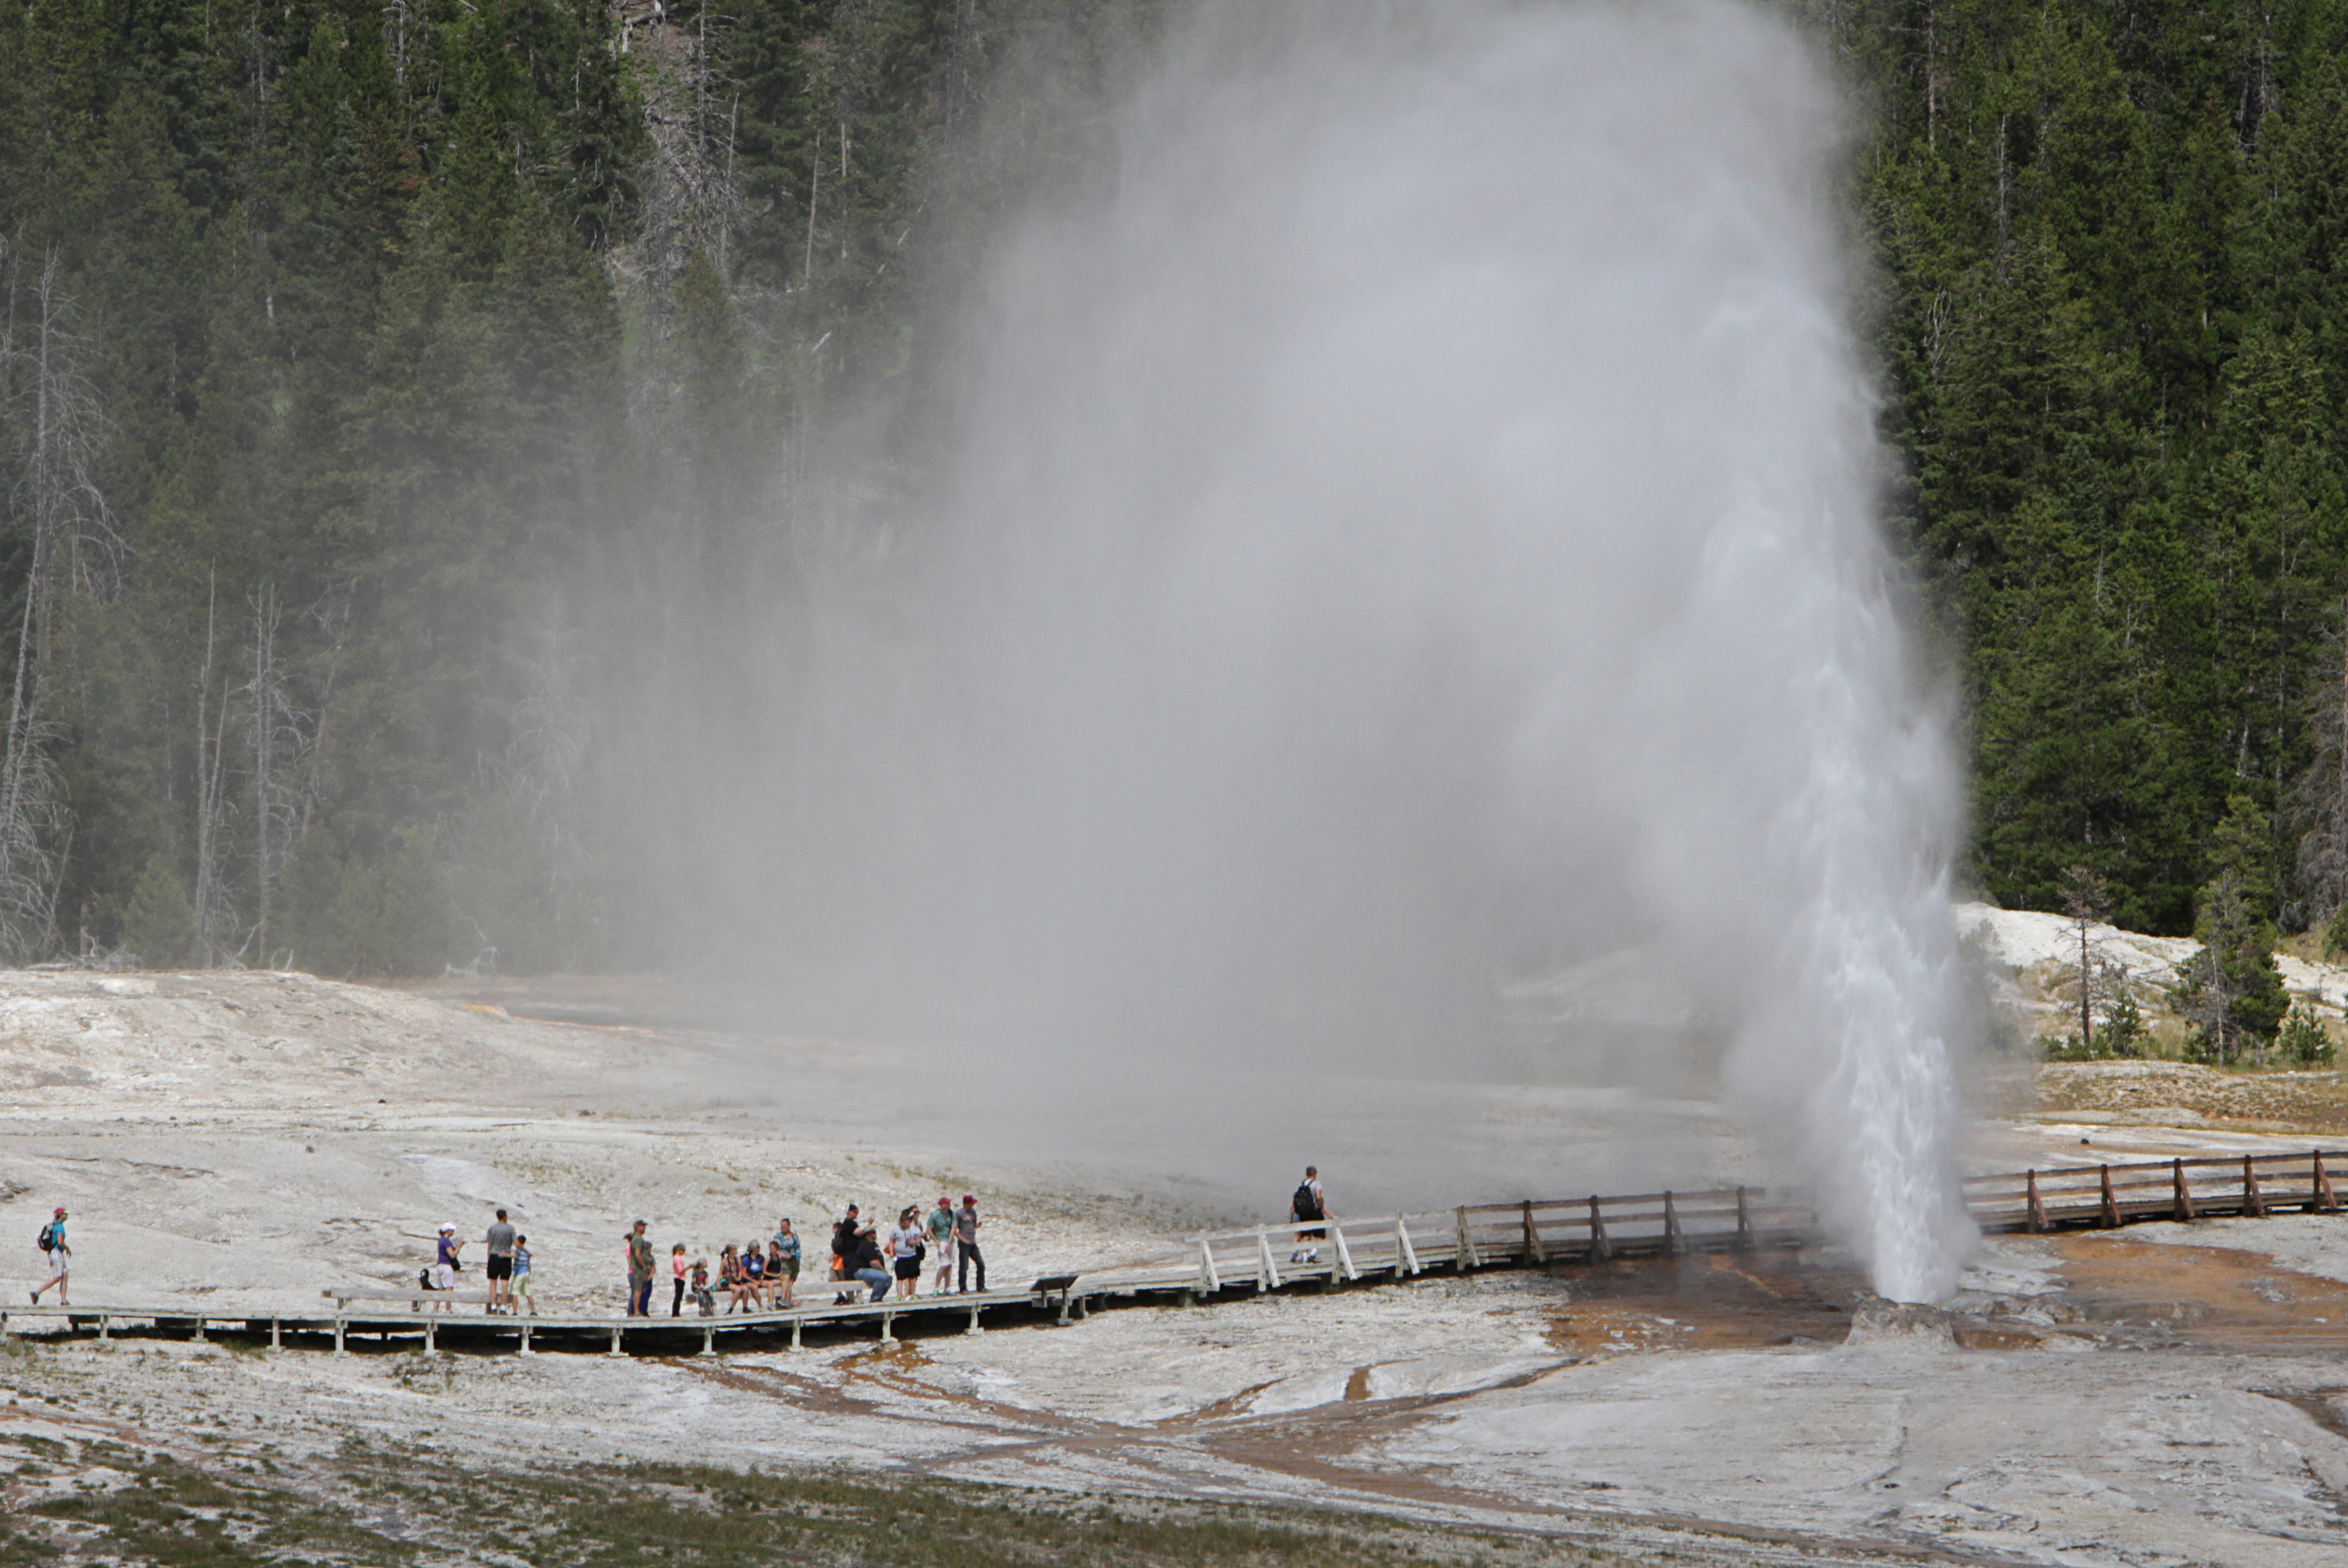 People on a wooden boardwalk watch a geyser erupt.